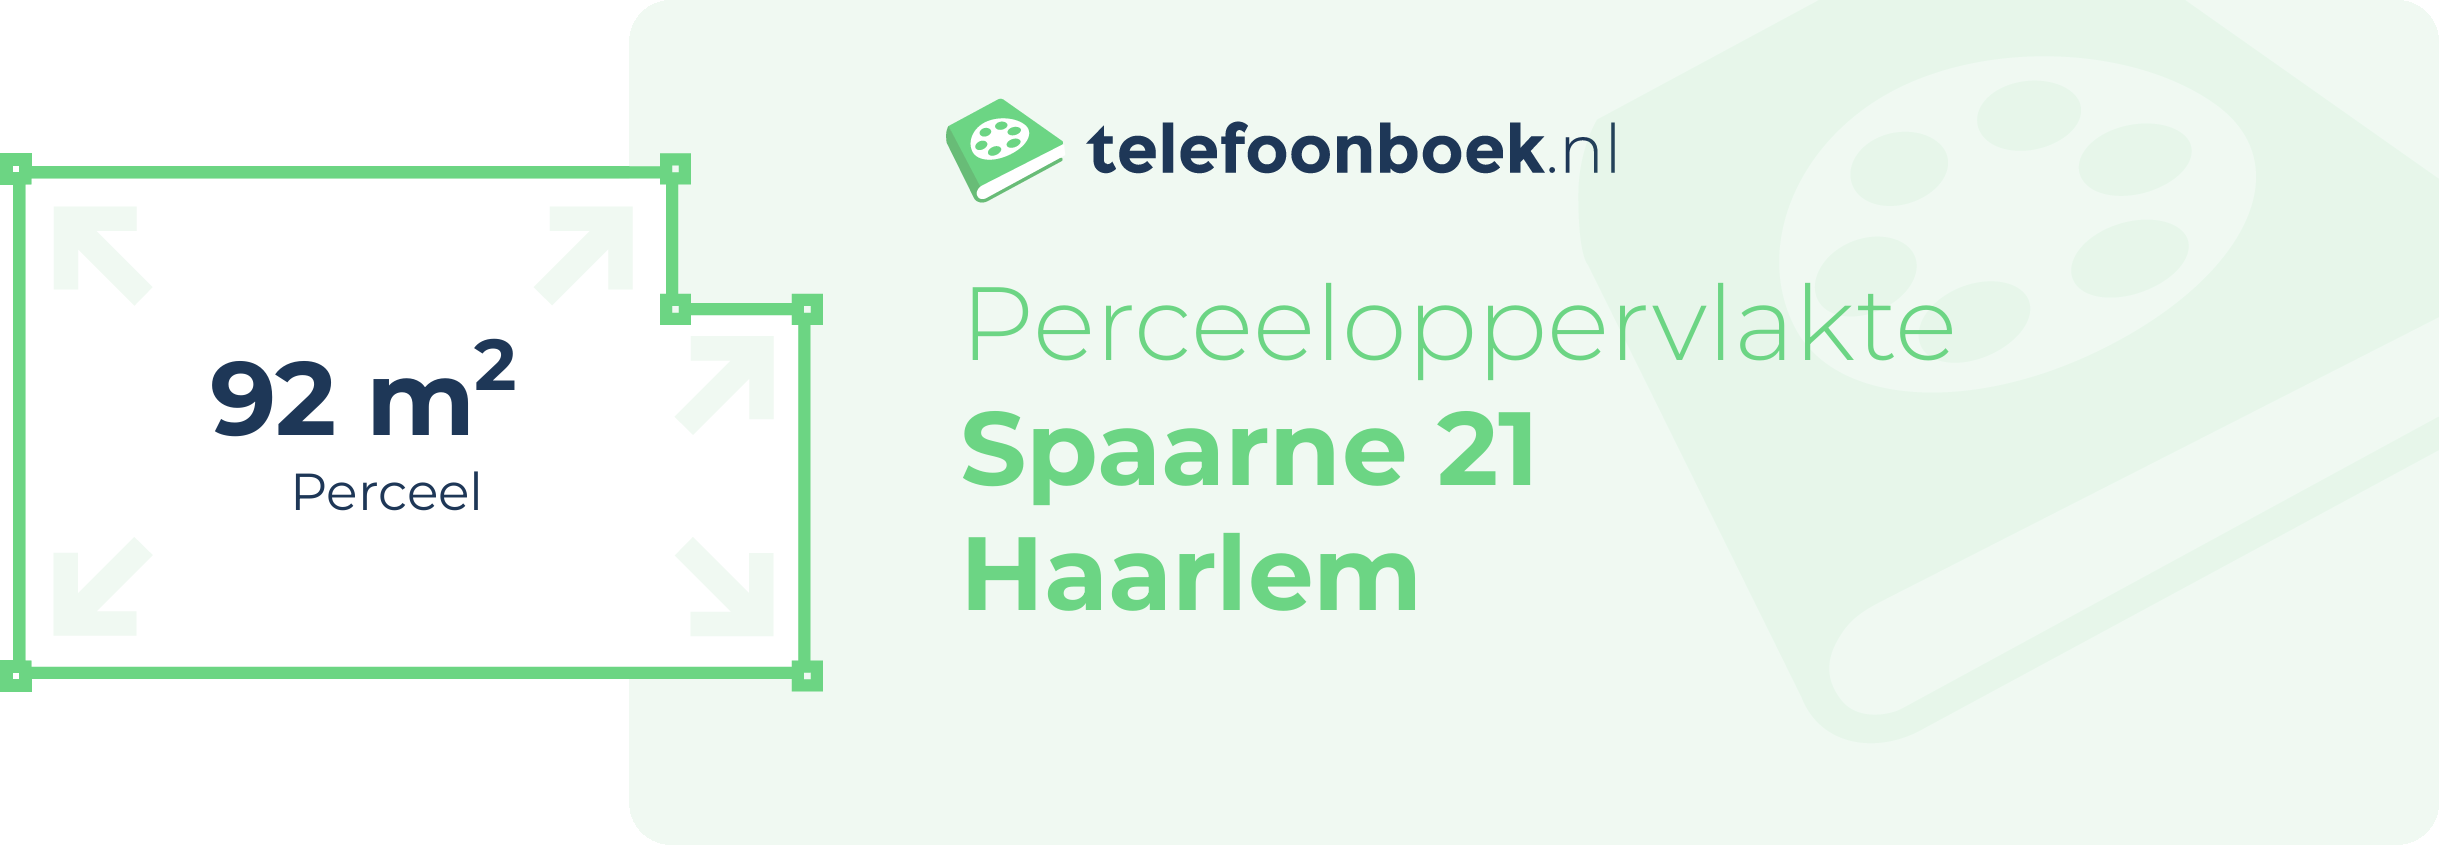 Perceeloppervlakte Spaarne 21 Haarlem